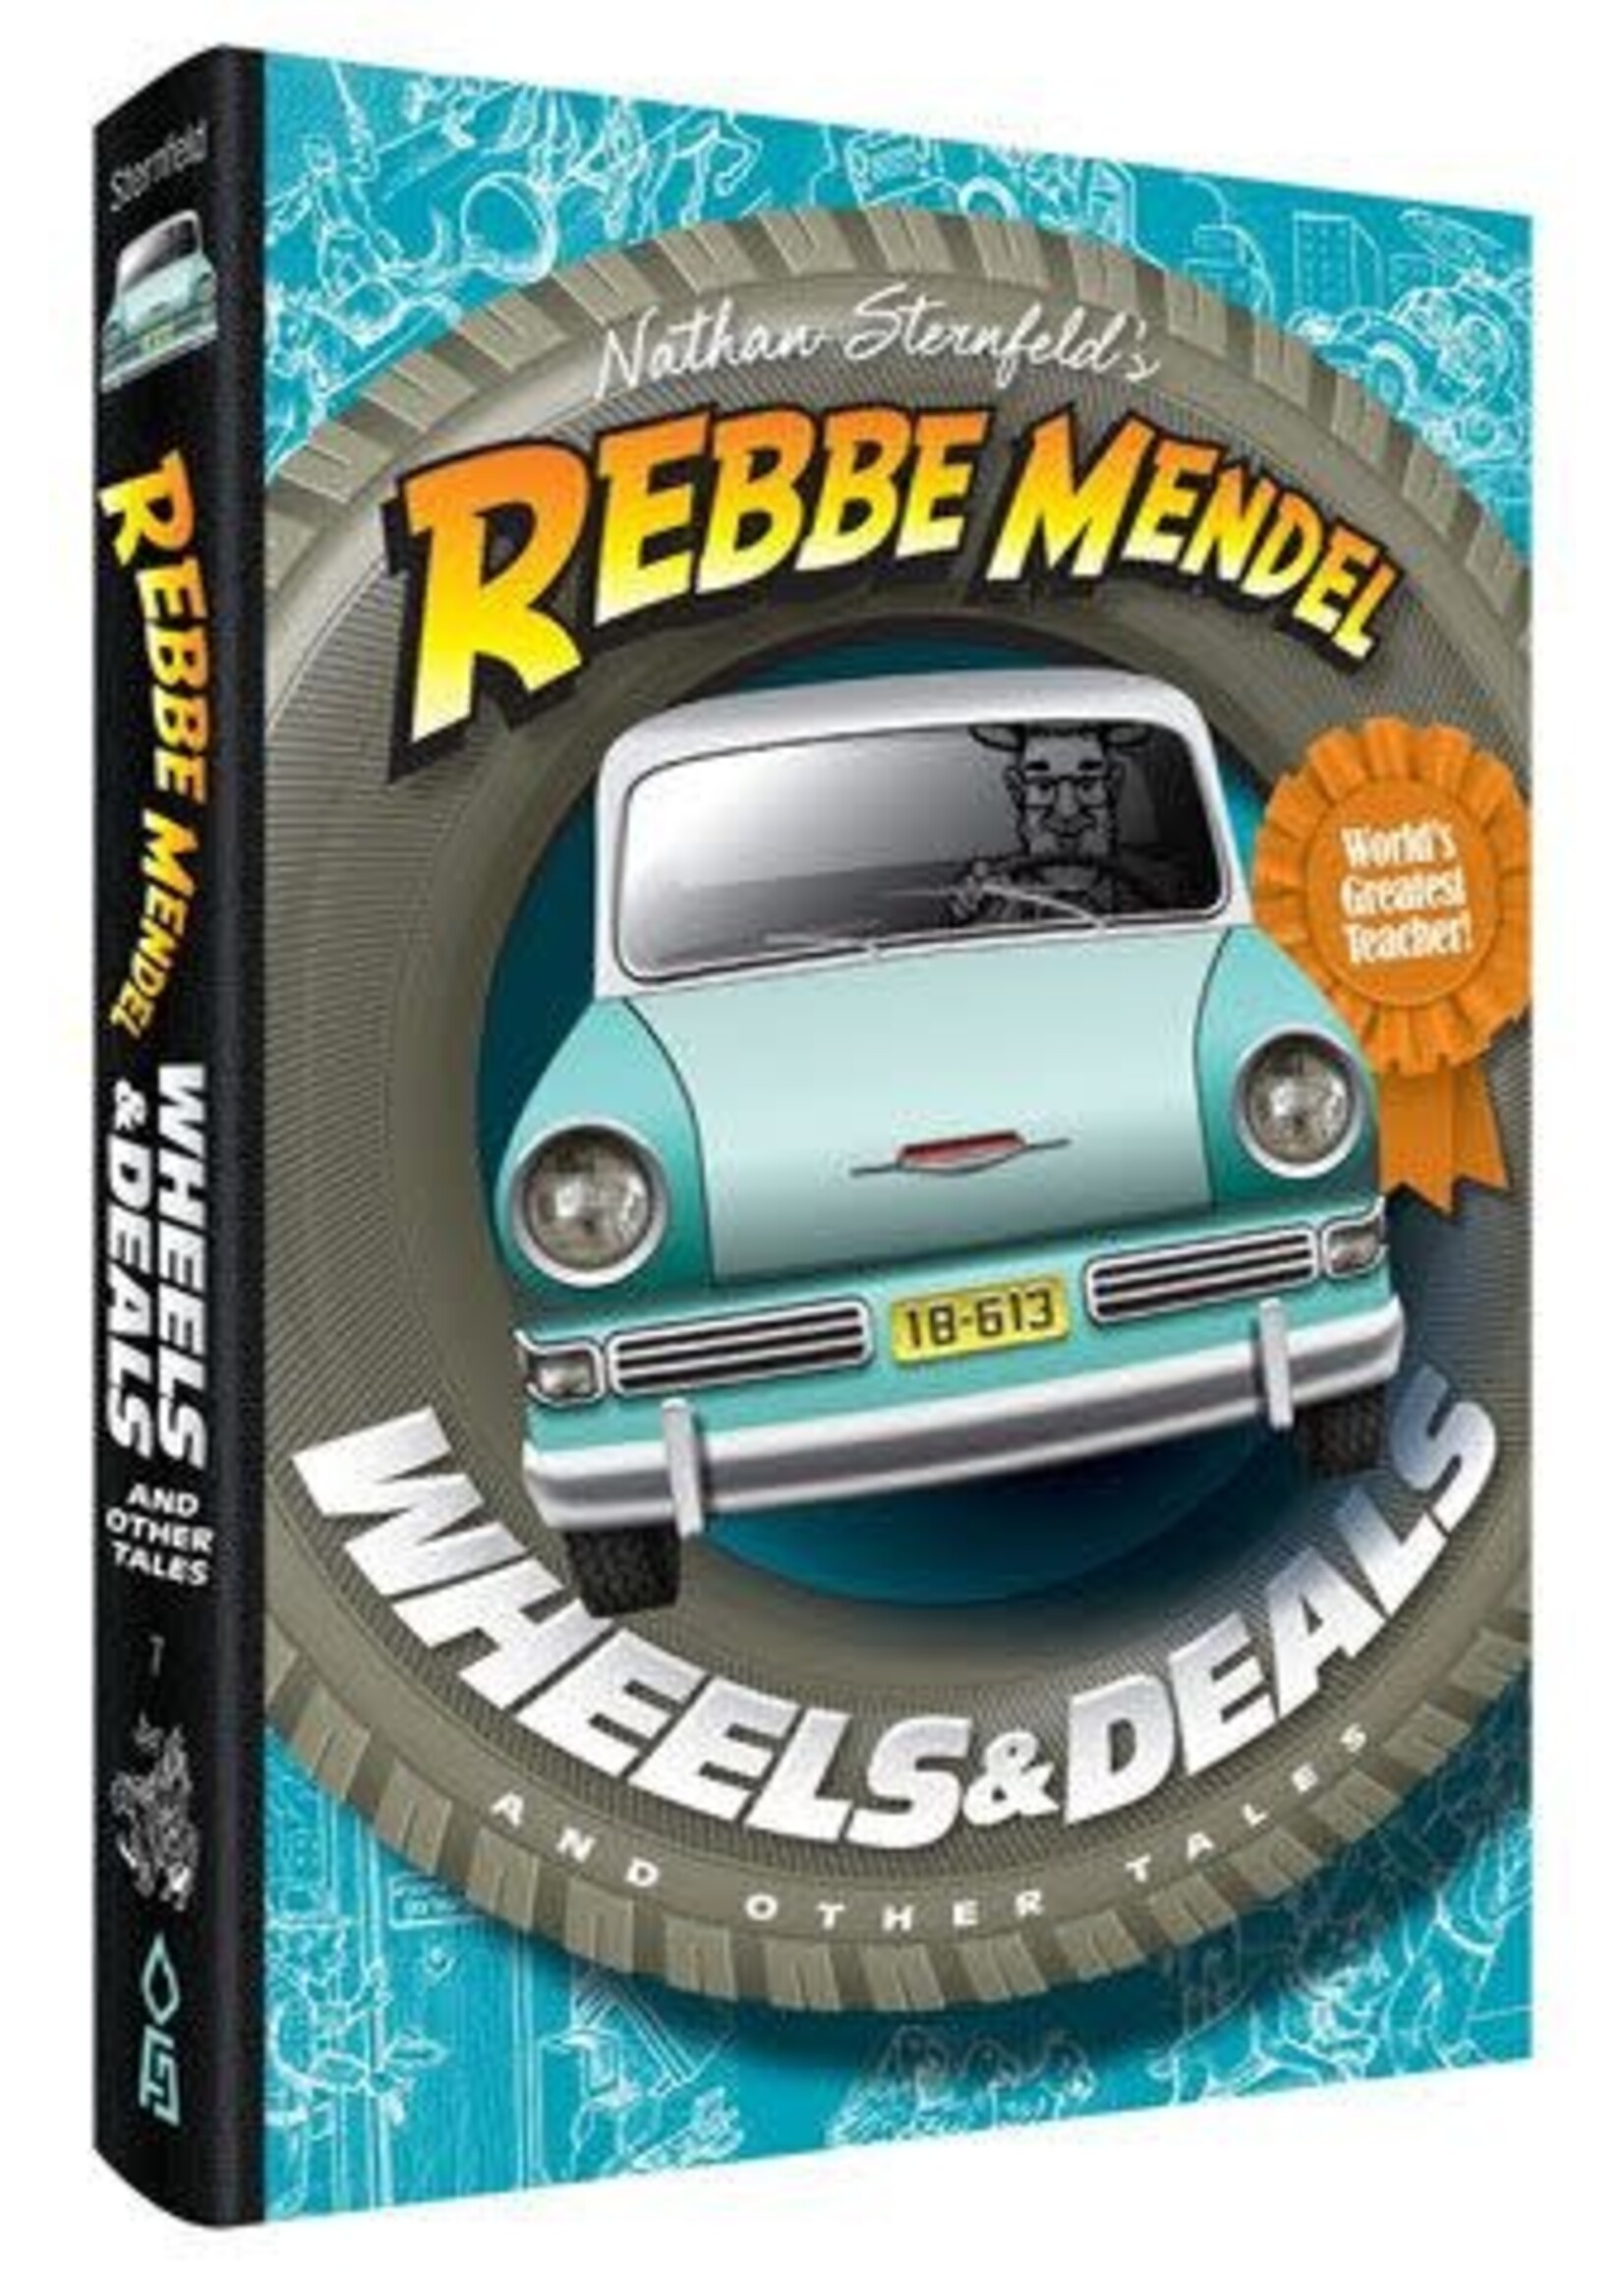 REBBE MENDEL #7 WHEELS & DEALS